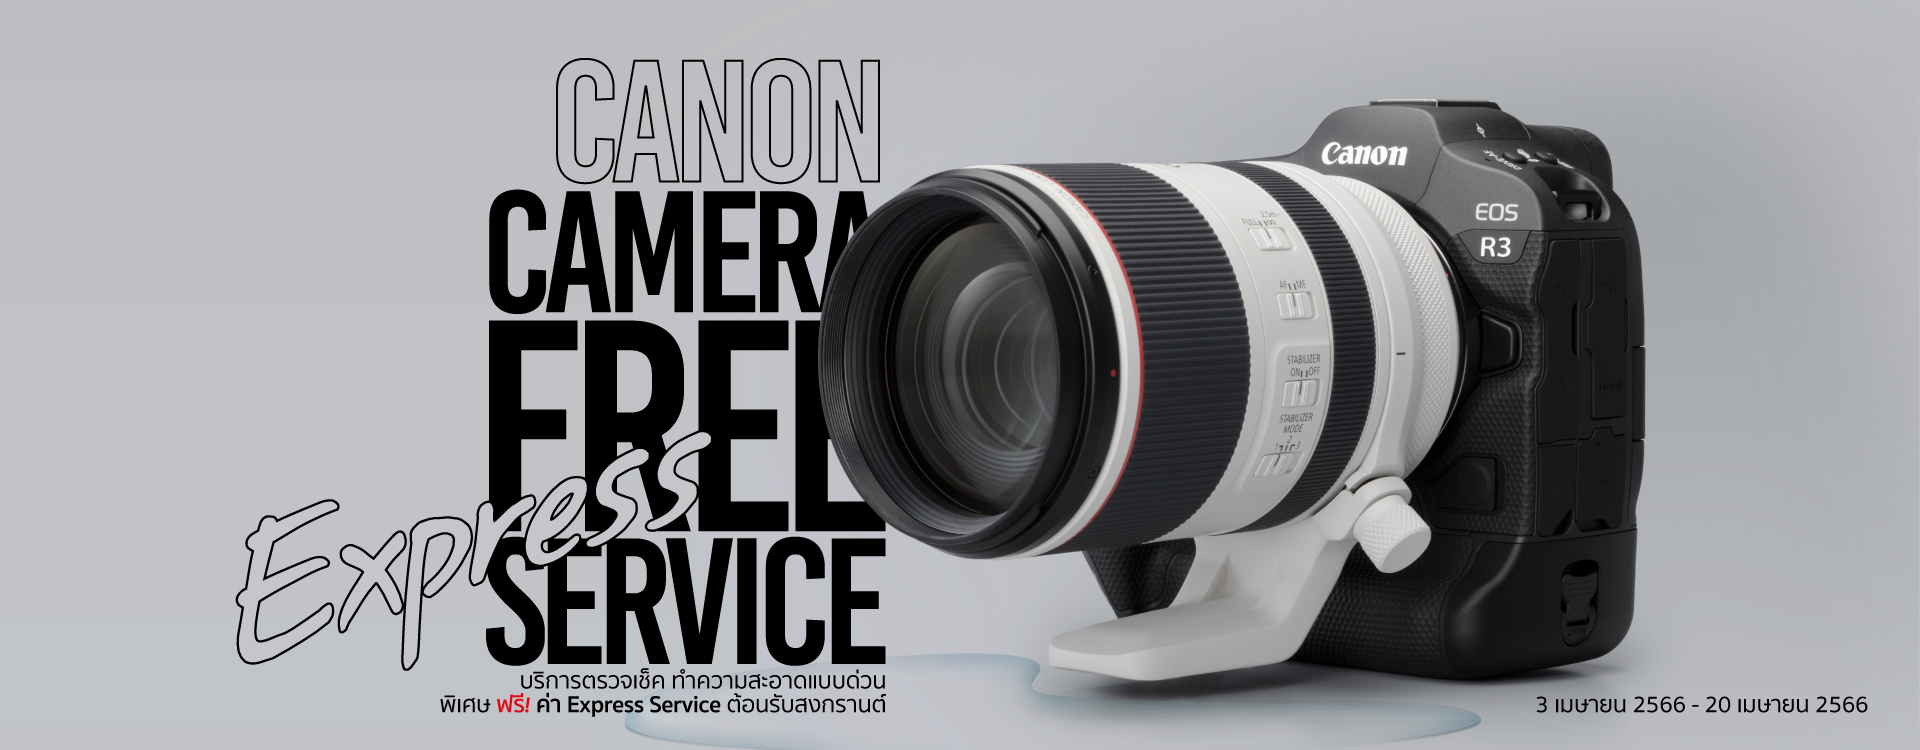 Canon ขอเชิญชวนให้คุณตรวจสอบกล้อง/อุปกรณ์เสริม ทำความสะอาด และซ่อมแซมก่อนเดินทาง